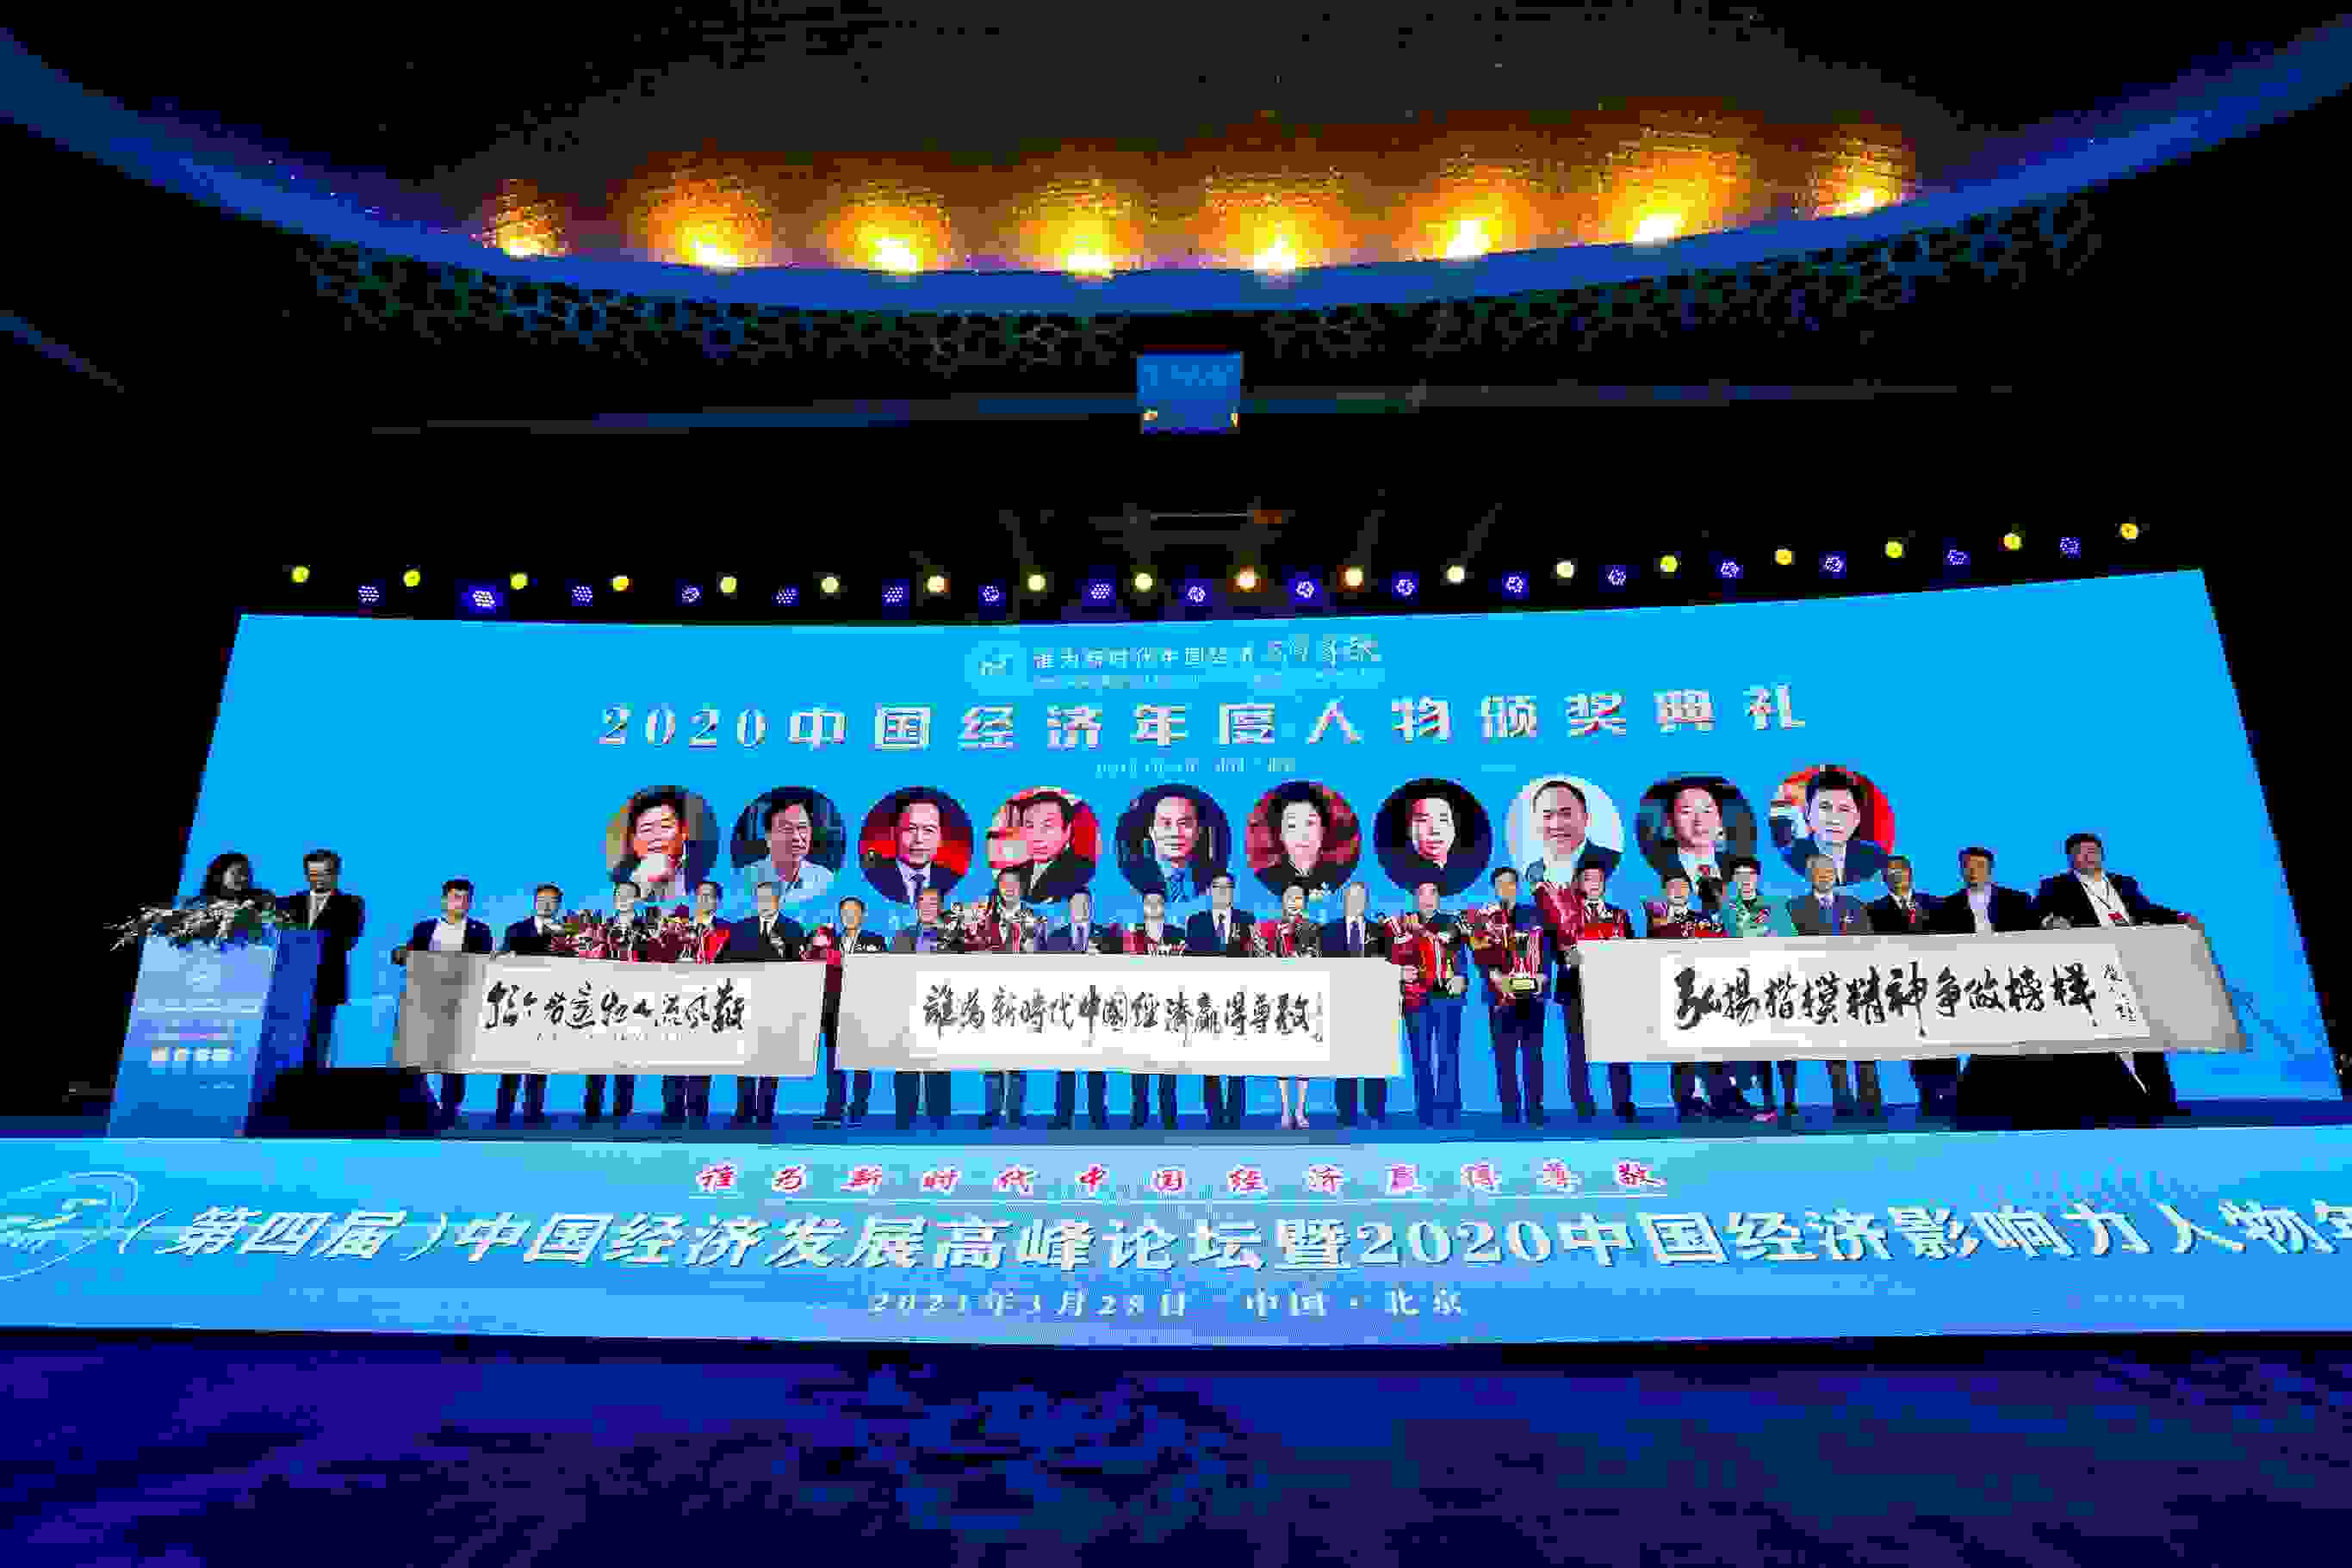 飞马滨董事长刘羽菁荣膺“2020中国经济影响力年度人物”大奖